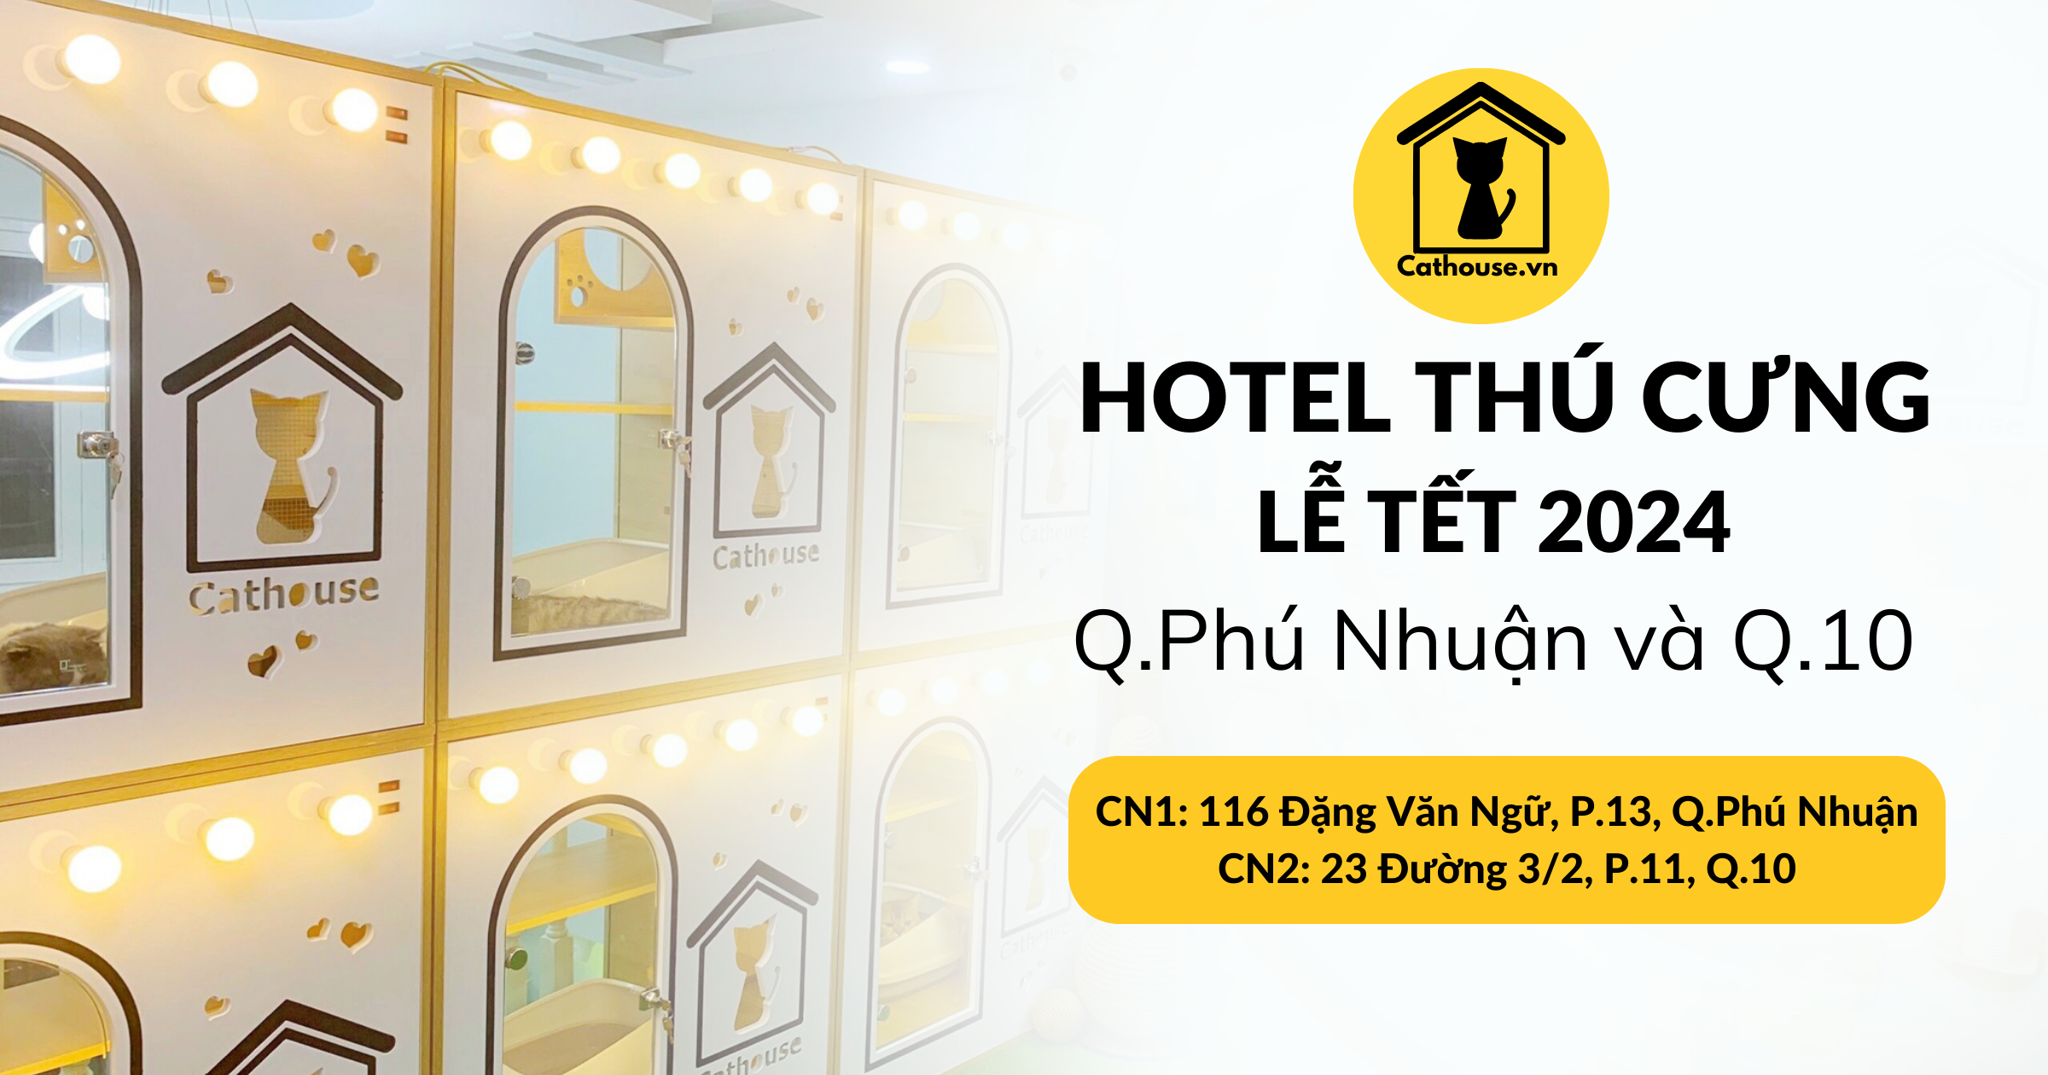 Hotel Thú Cưng Lễ Tết 2024 Tại Q.Phú Nhuận & Q.10